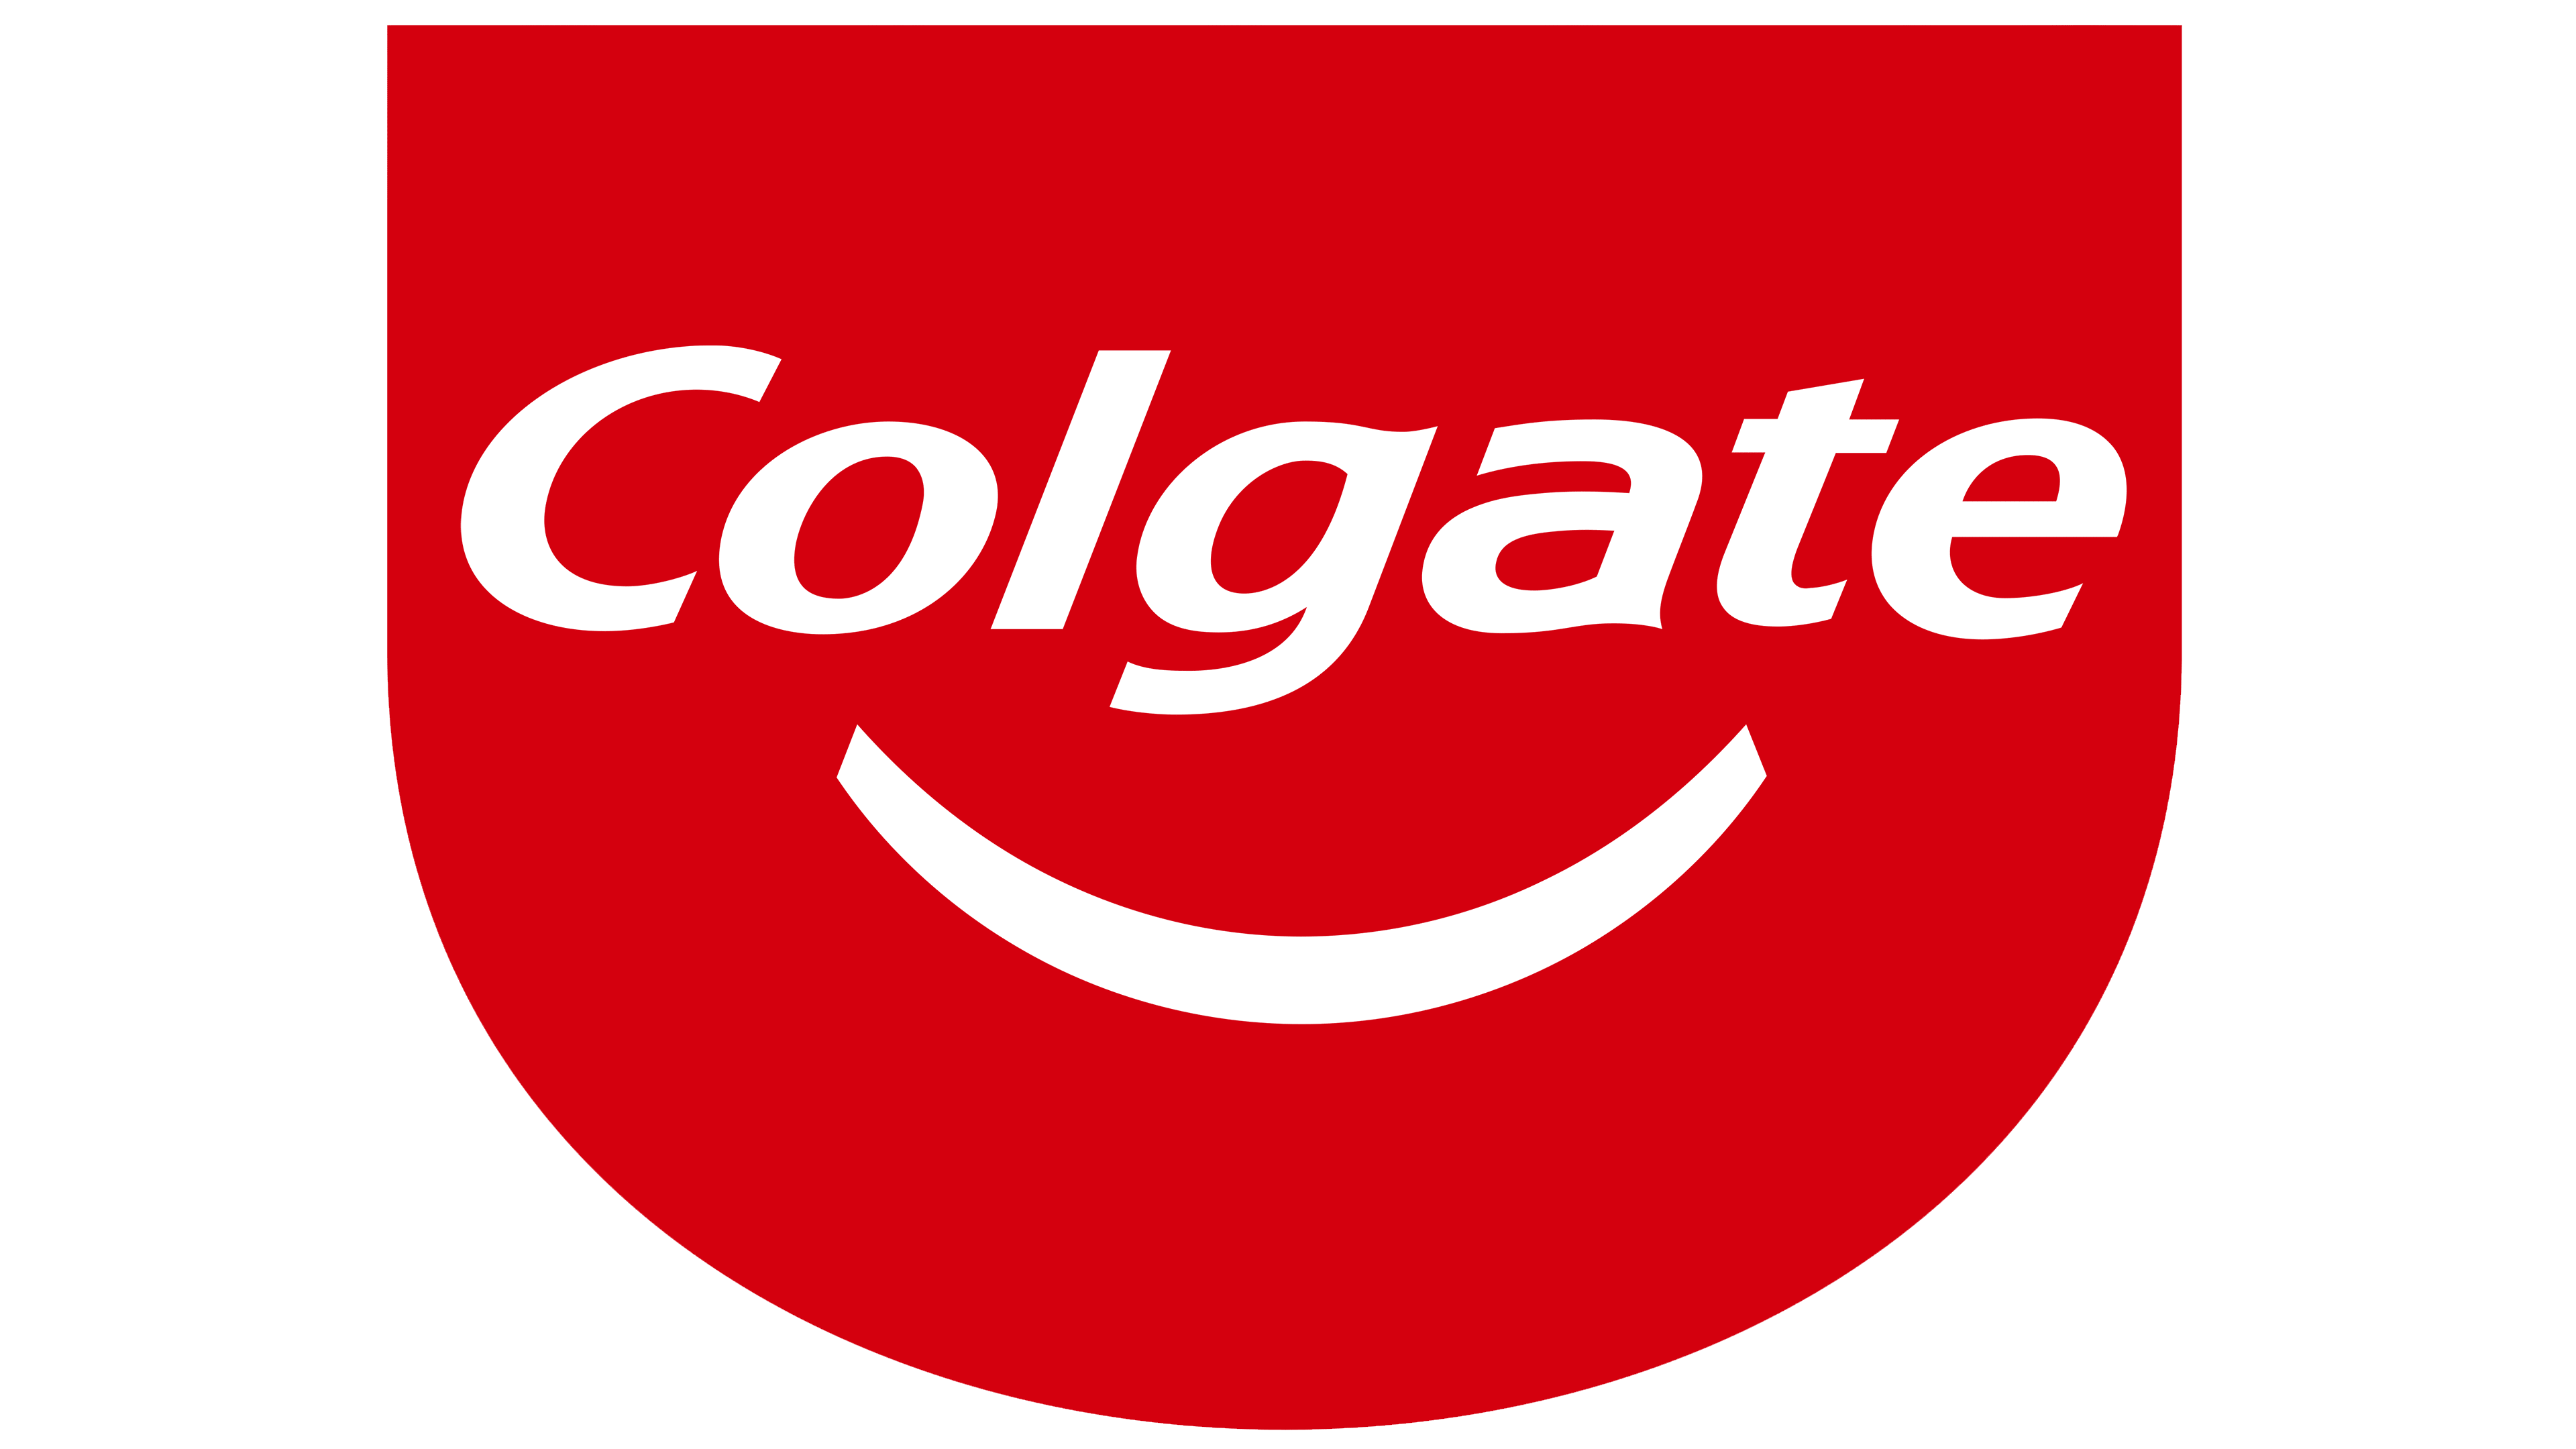 Colgate logo Télécharger limage PNG Transparente